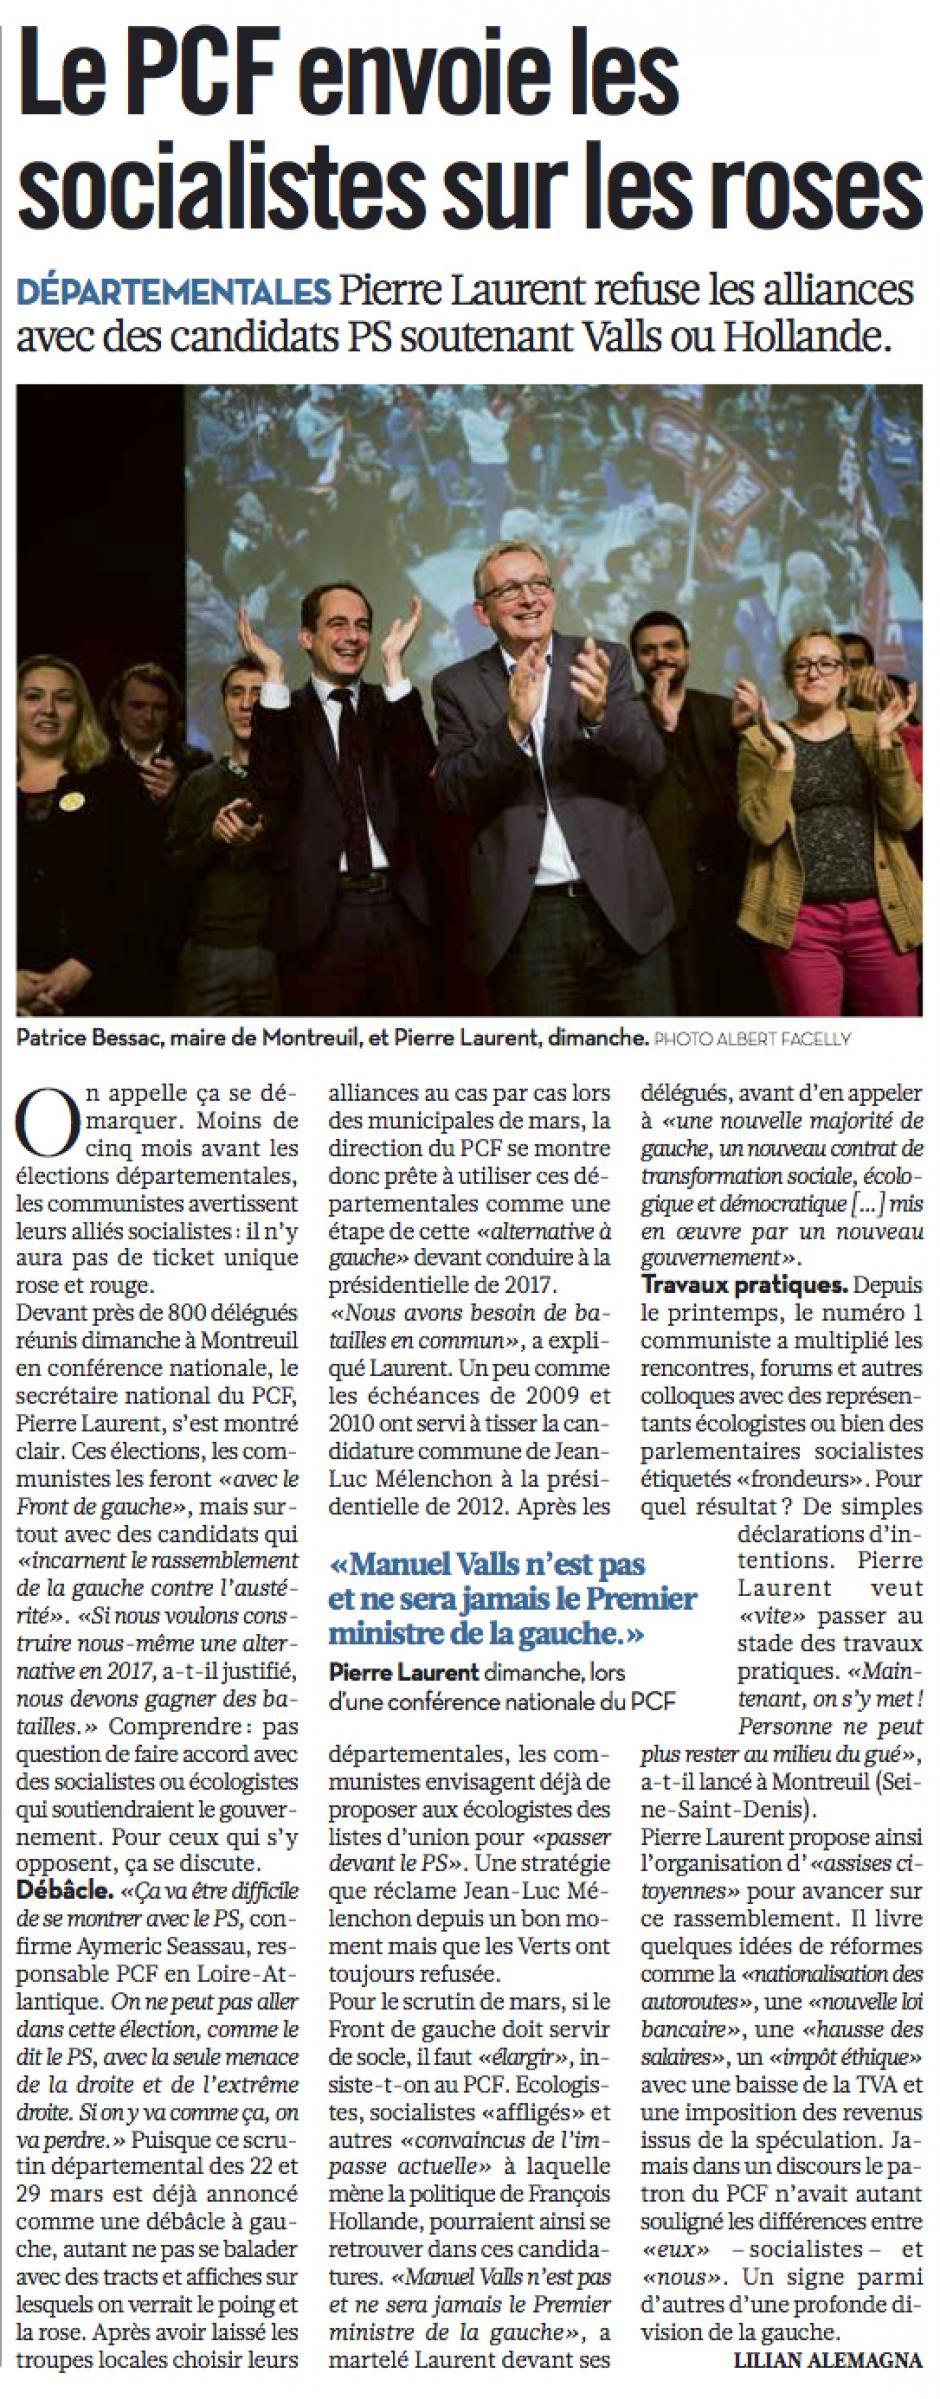 20141110-Libé-France-Le PCF envoie les socialistes sur les roses